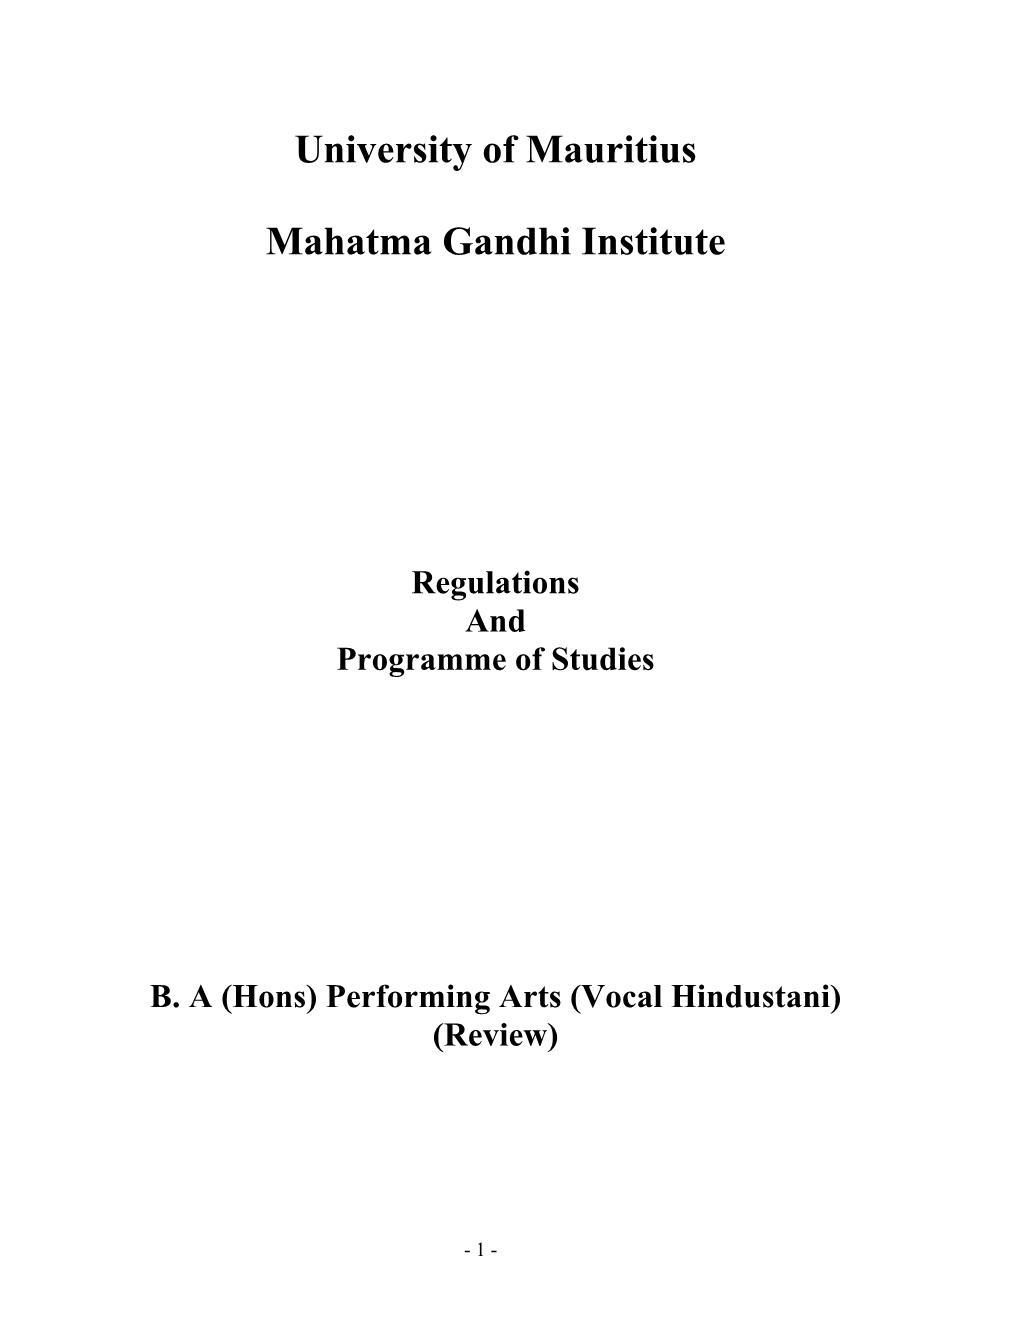 University of Mauritius Mahatma Gandhi Institute